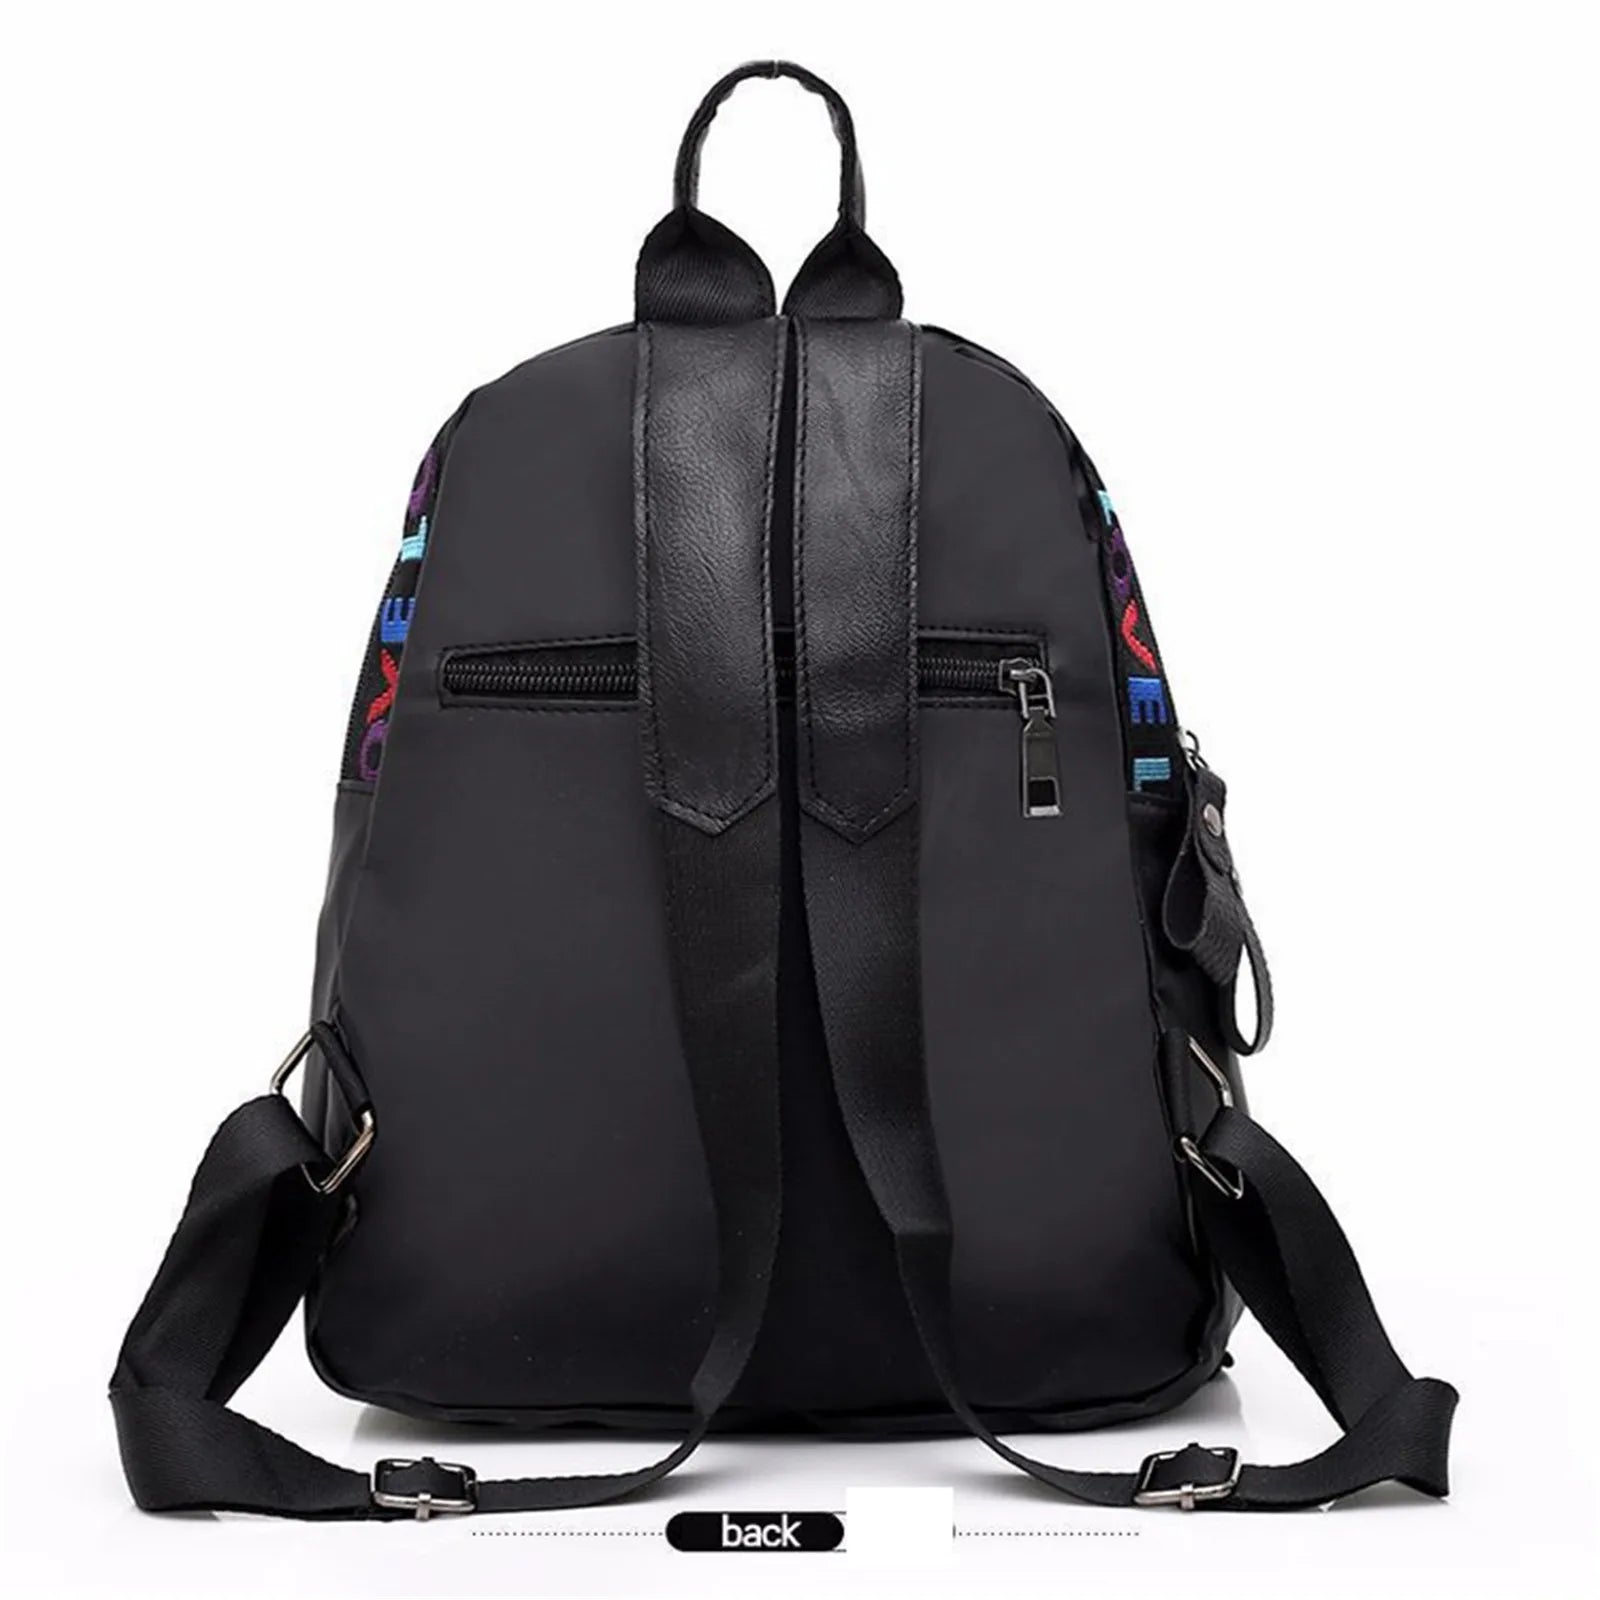 Women Small Backpacks Designer Fashion LOVE Letter Zipper Casual Nylon Female Ladies Shoulder Bag Travel Back Pack School Bag